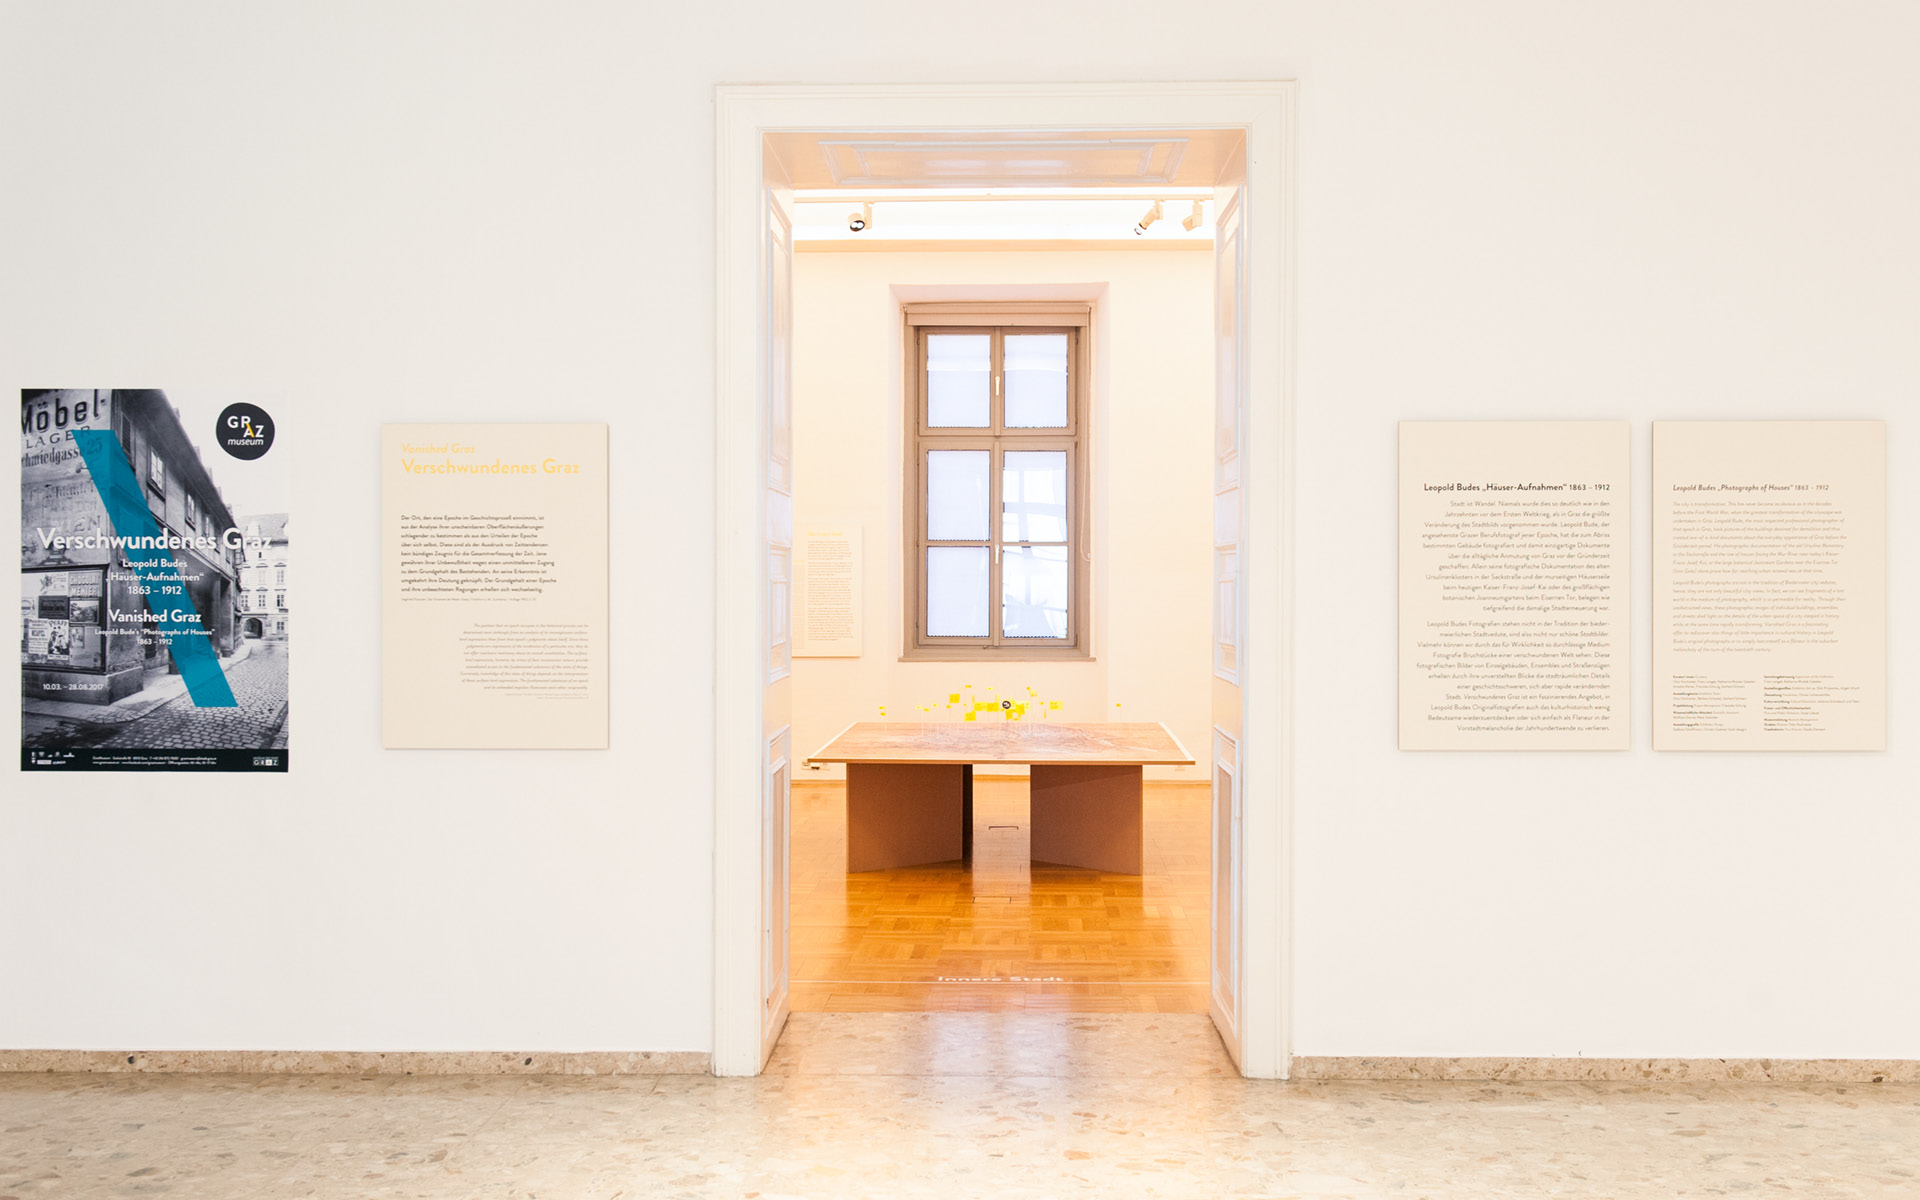 Ausstellungsgrafik für die Ausstellung "Verschwundenes Graz" im GrazMuseum von der Werbeagentur look! design